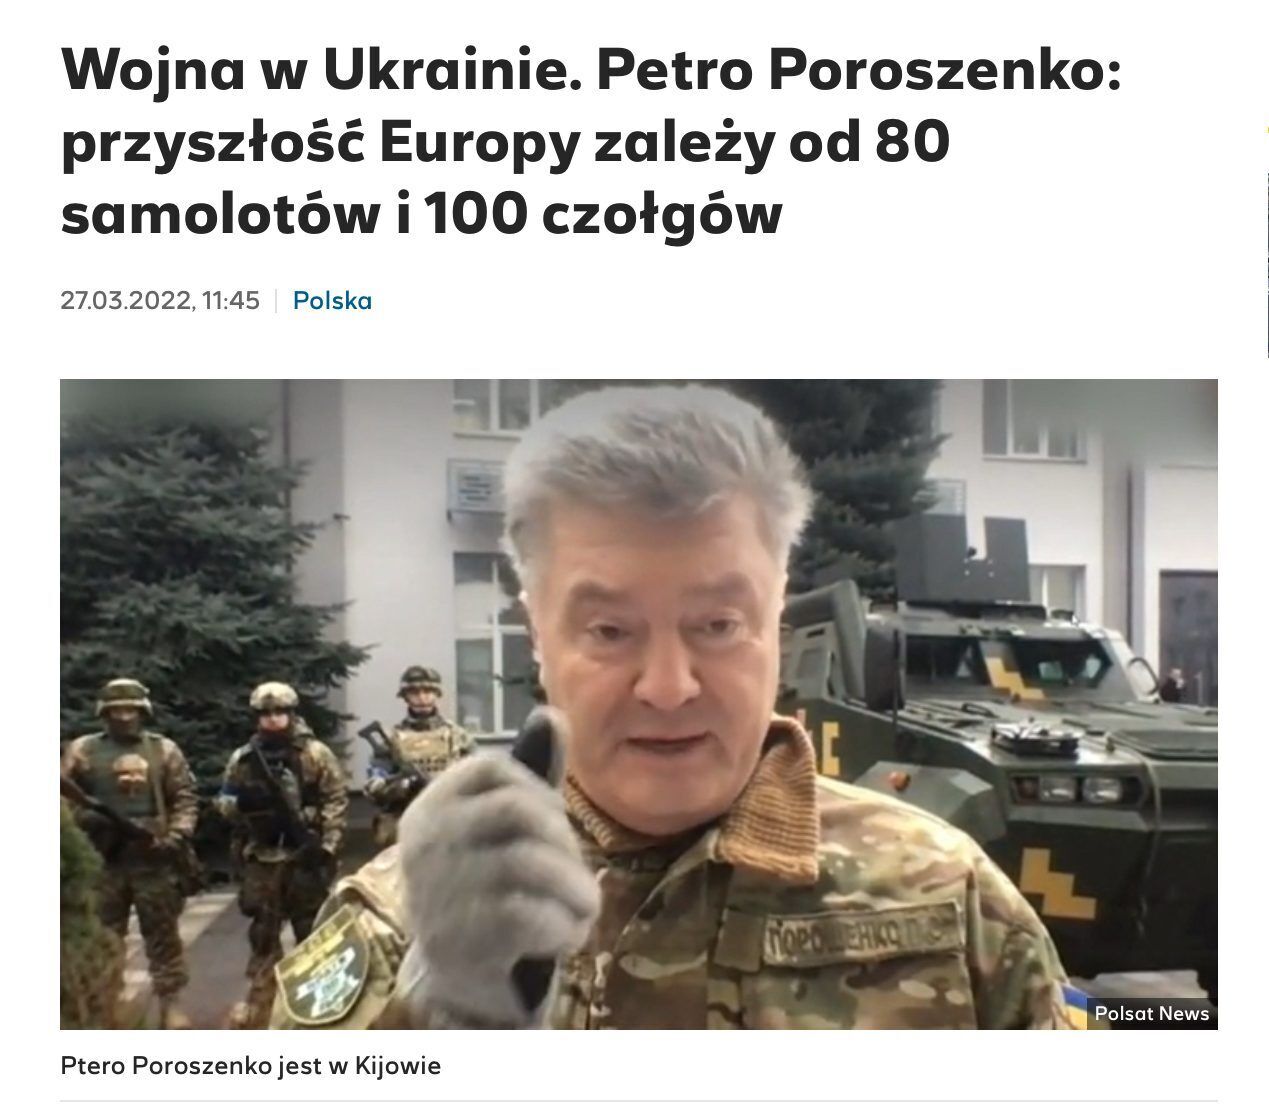 Майбутнє Європи зараз залежить від 80 літаків і 100 танків для української армії, – Порошенко в ефірі Polsat News